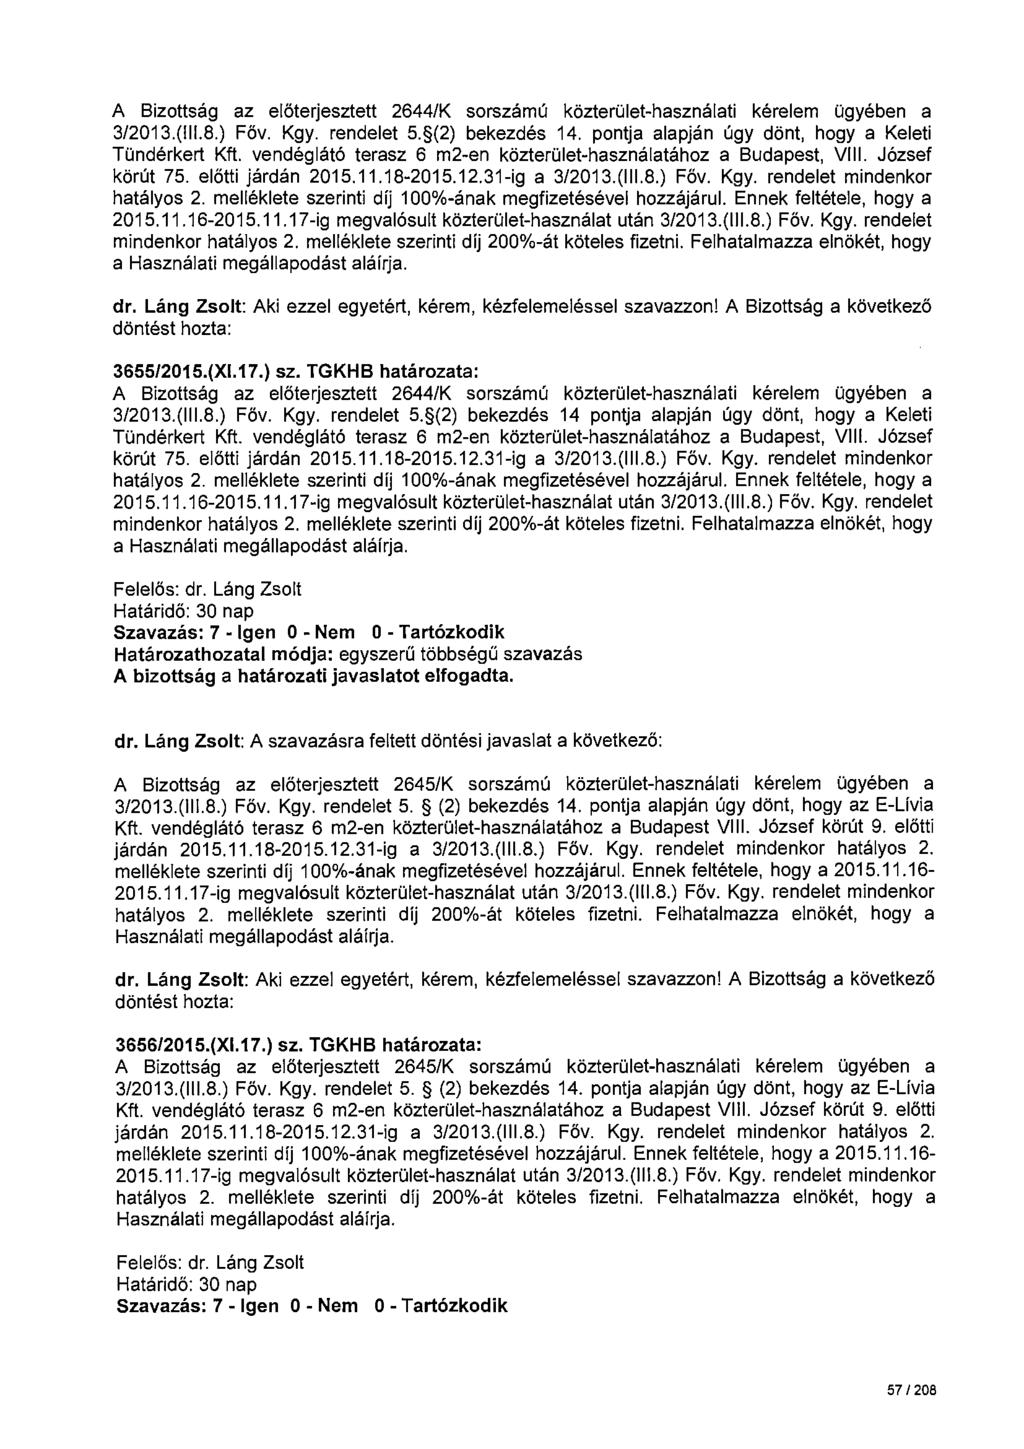 A Bizottság az előterjesztett 2644/K sorszámú közterület-használati kérelem ügyében a 3/2013.(111.8.) Föv. Kgy. rendelet 5. (2) bekezdés 14. pontja alapján úgy dönt, hogy a Keleti Tündérkert Kft.